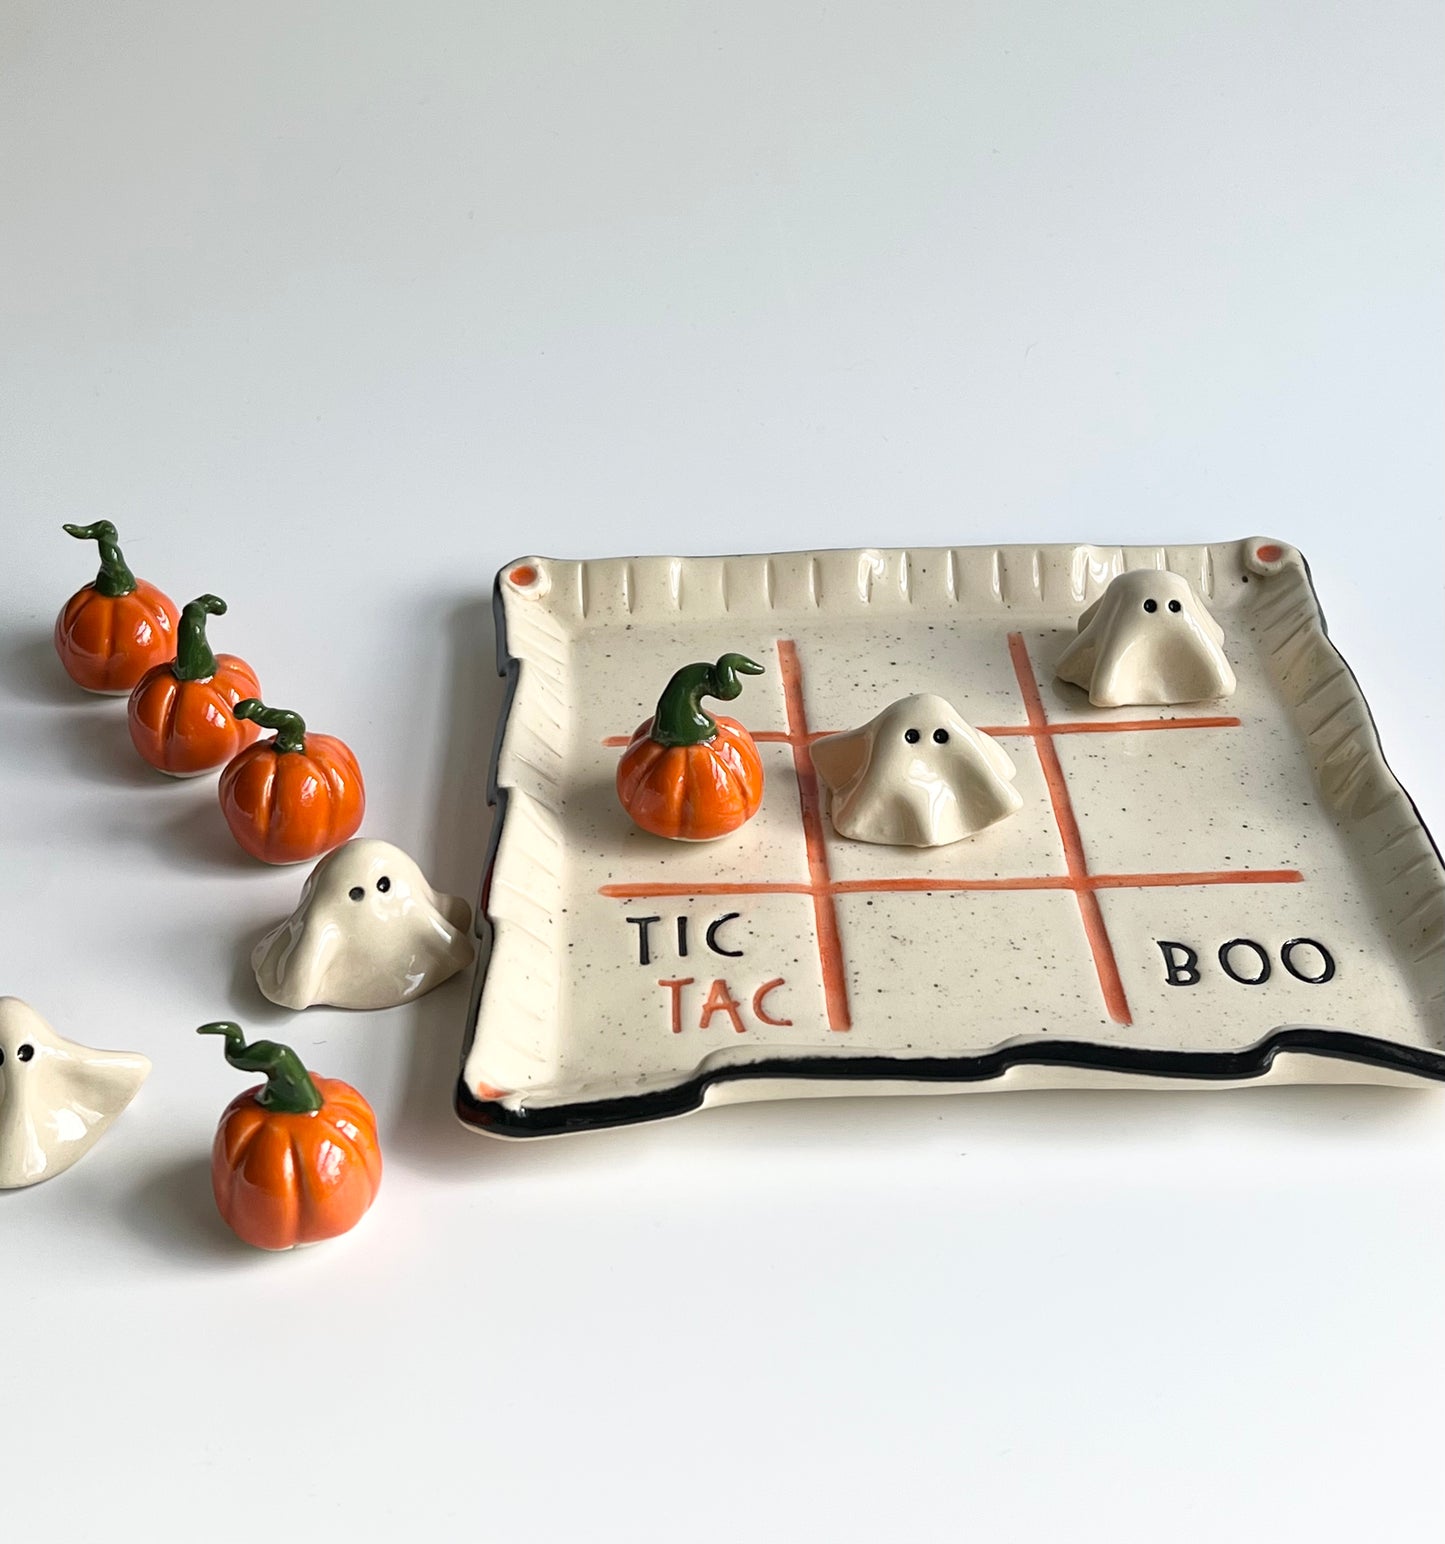 Ceramic Tic Tac BOO! Gameboard